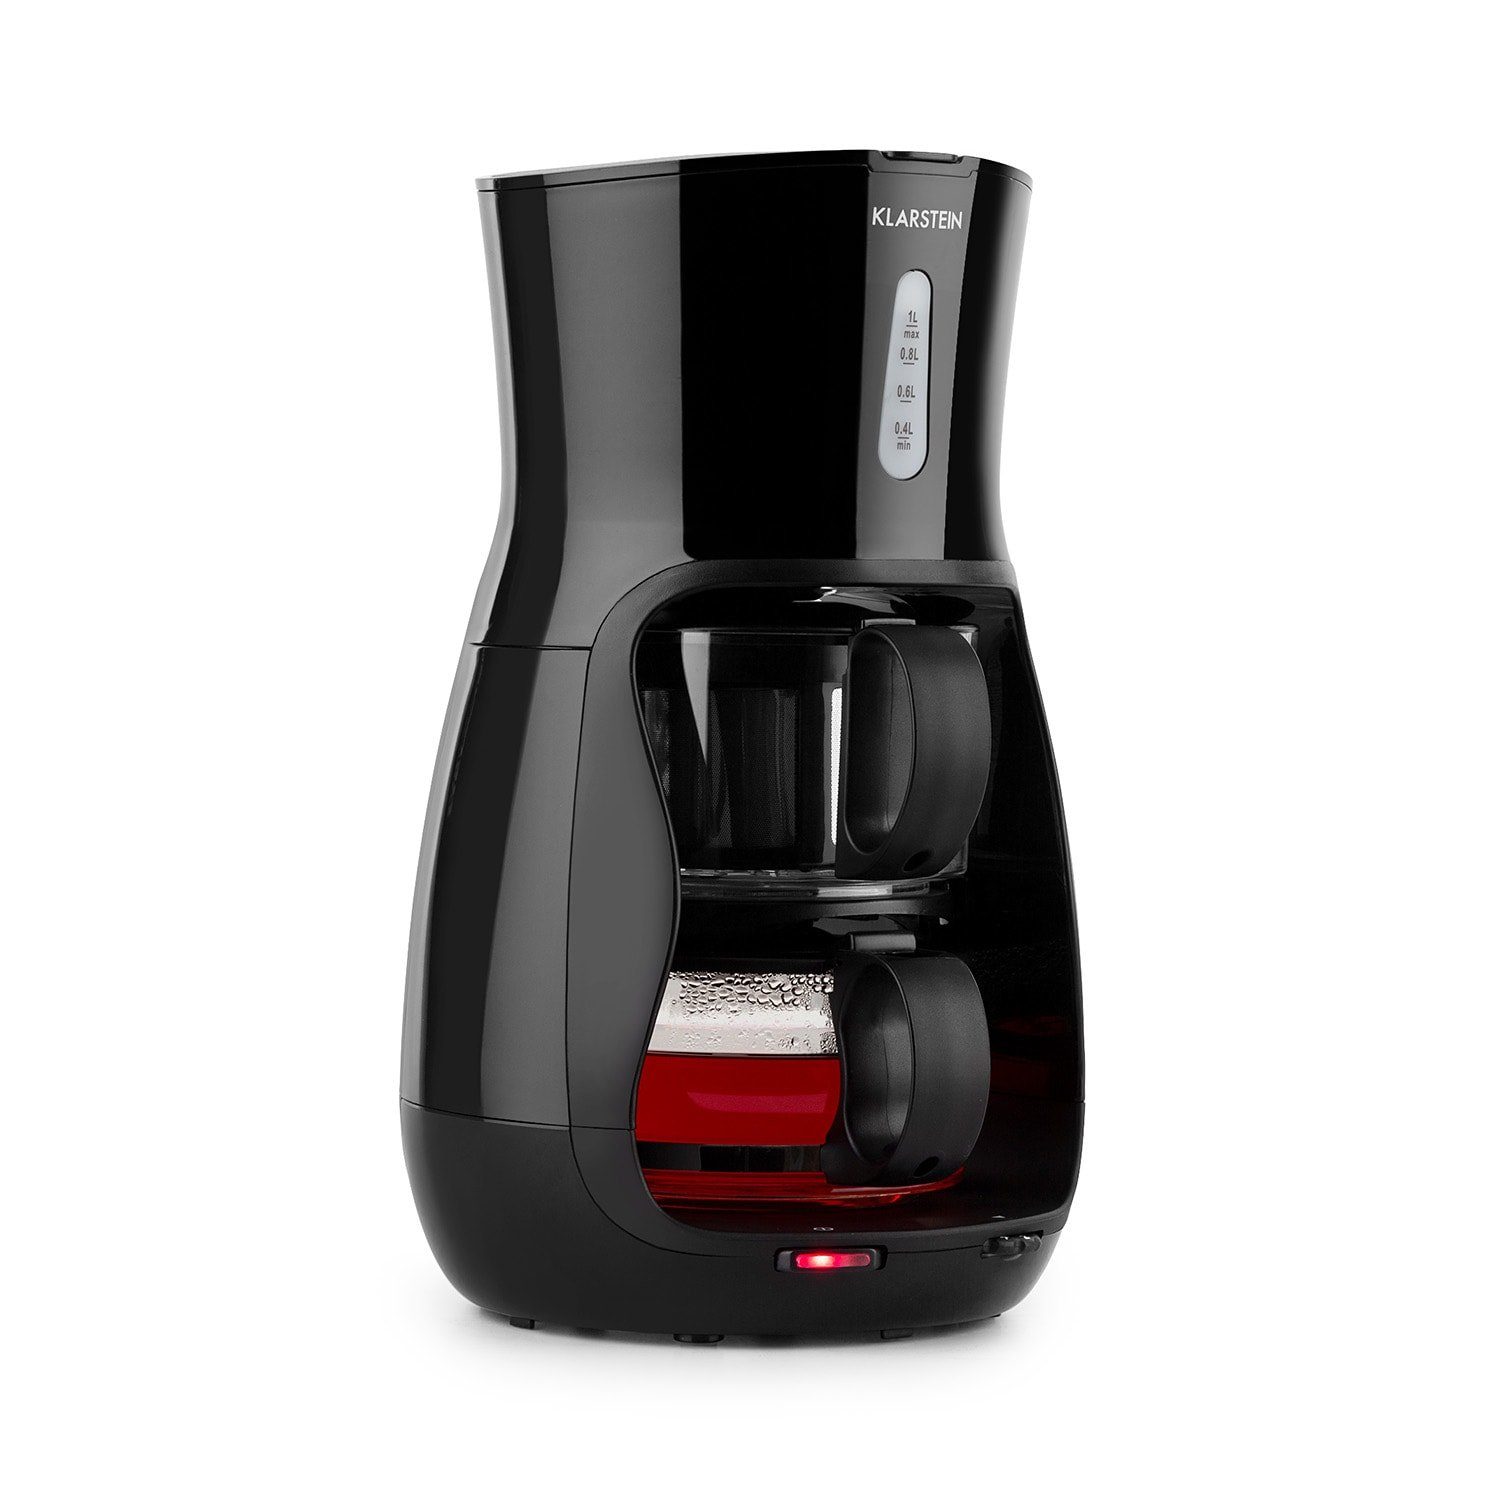 Klarstein Kaffee- /Teestation Klarstein Tealicious Tee-Vollautomat 1300W  2-16 min. 1 Liter, 1l Kaffeekanne online kaufen | OTTO